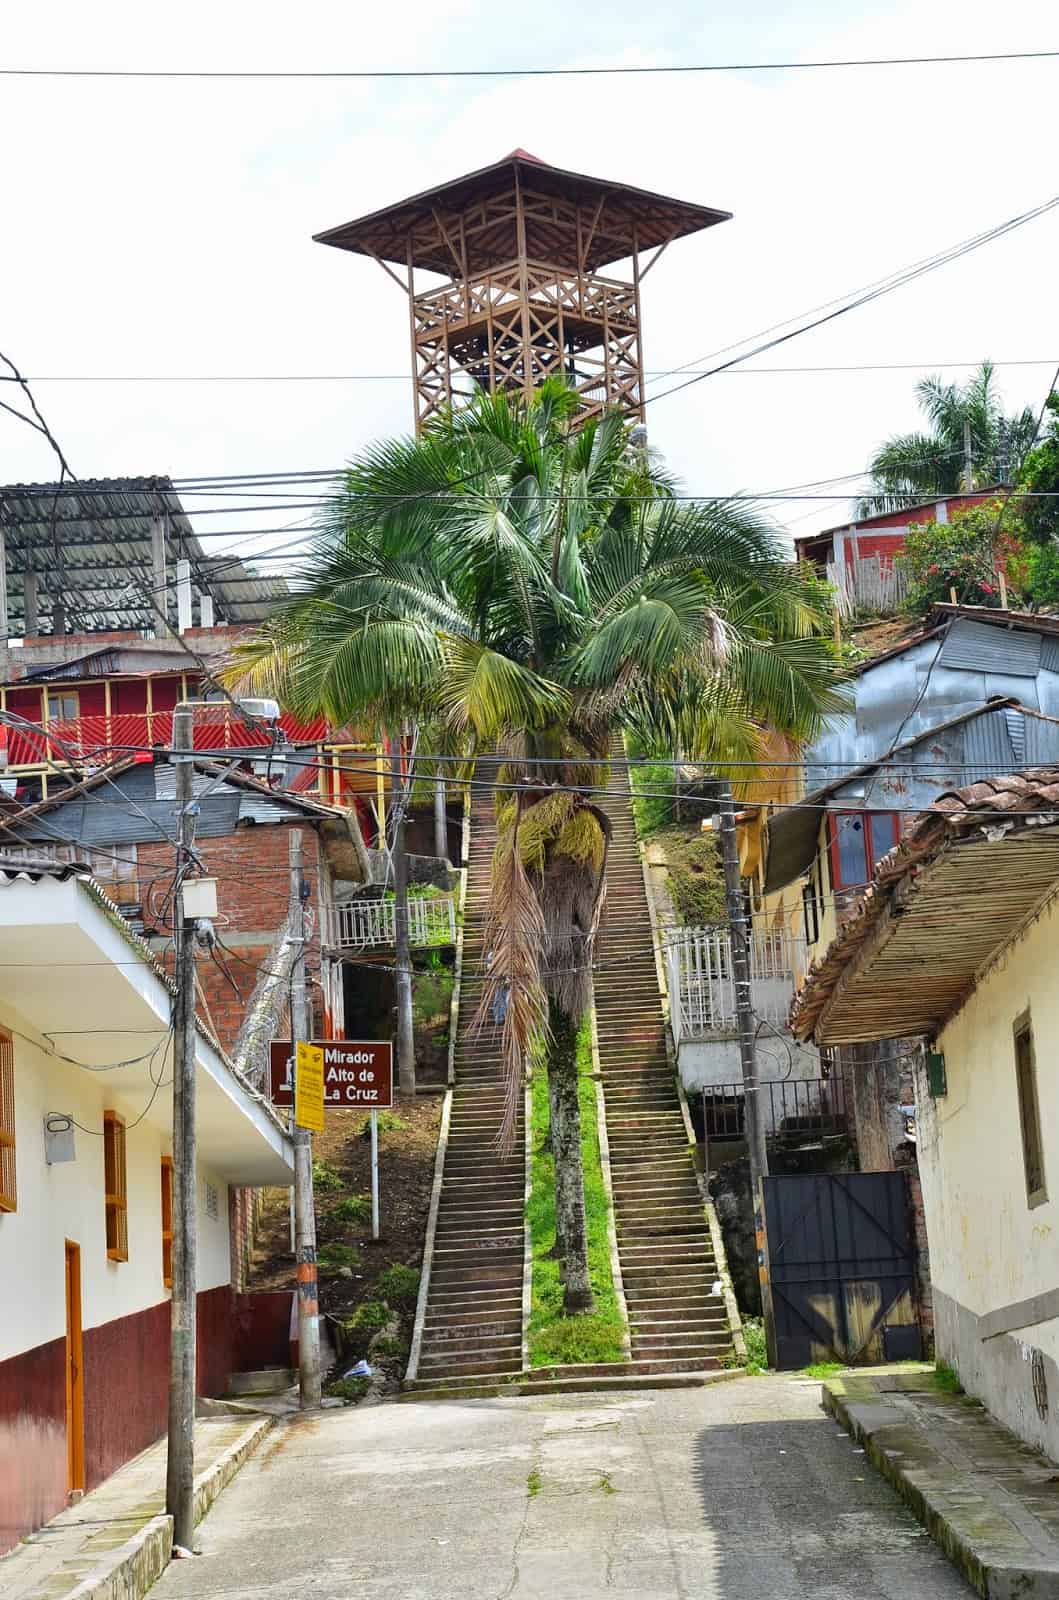 Mirador Alto de la Cruz in Circasia, Quindío, Colombia